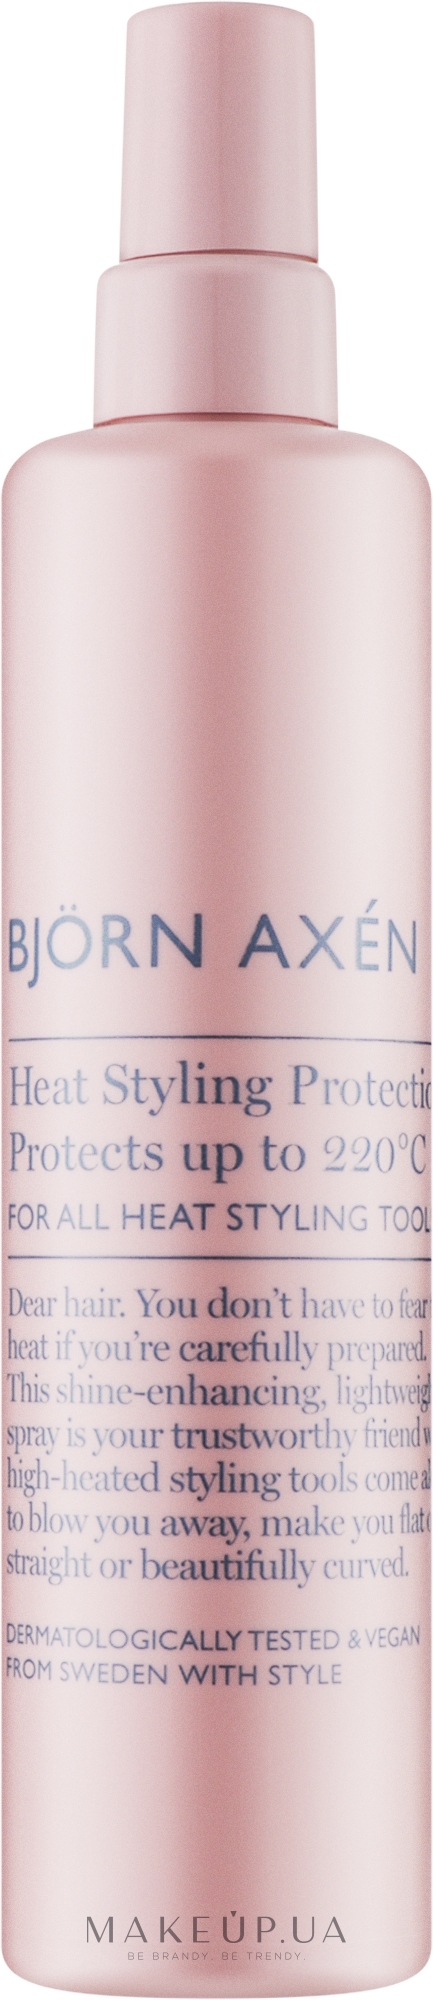 Термозахист для волосся - BjOrn AxEn Heat Styling Protection — фото 150ml